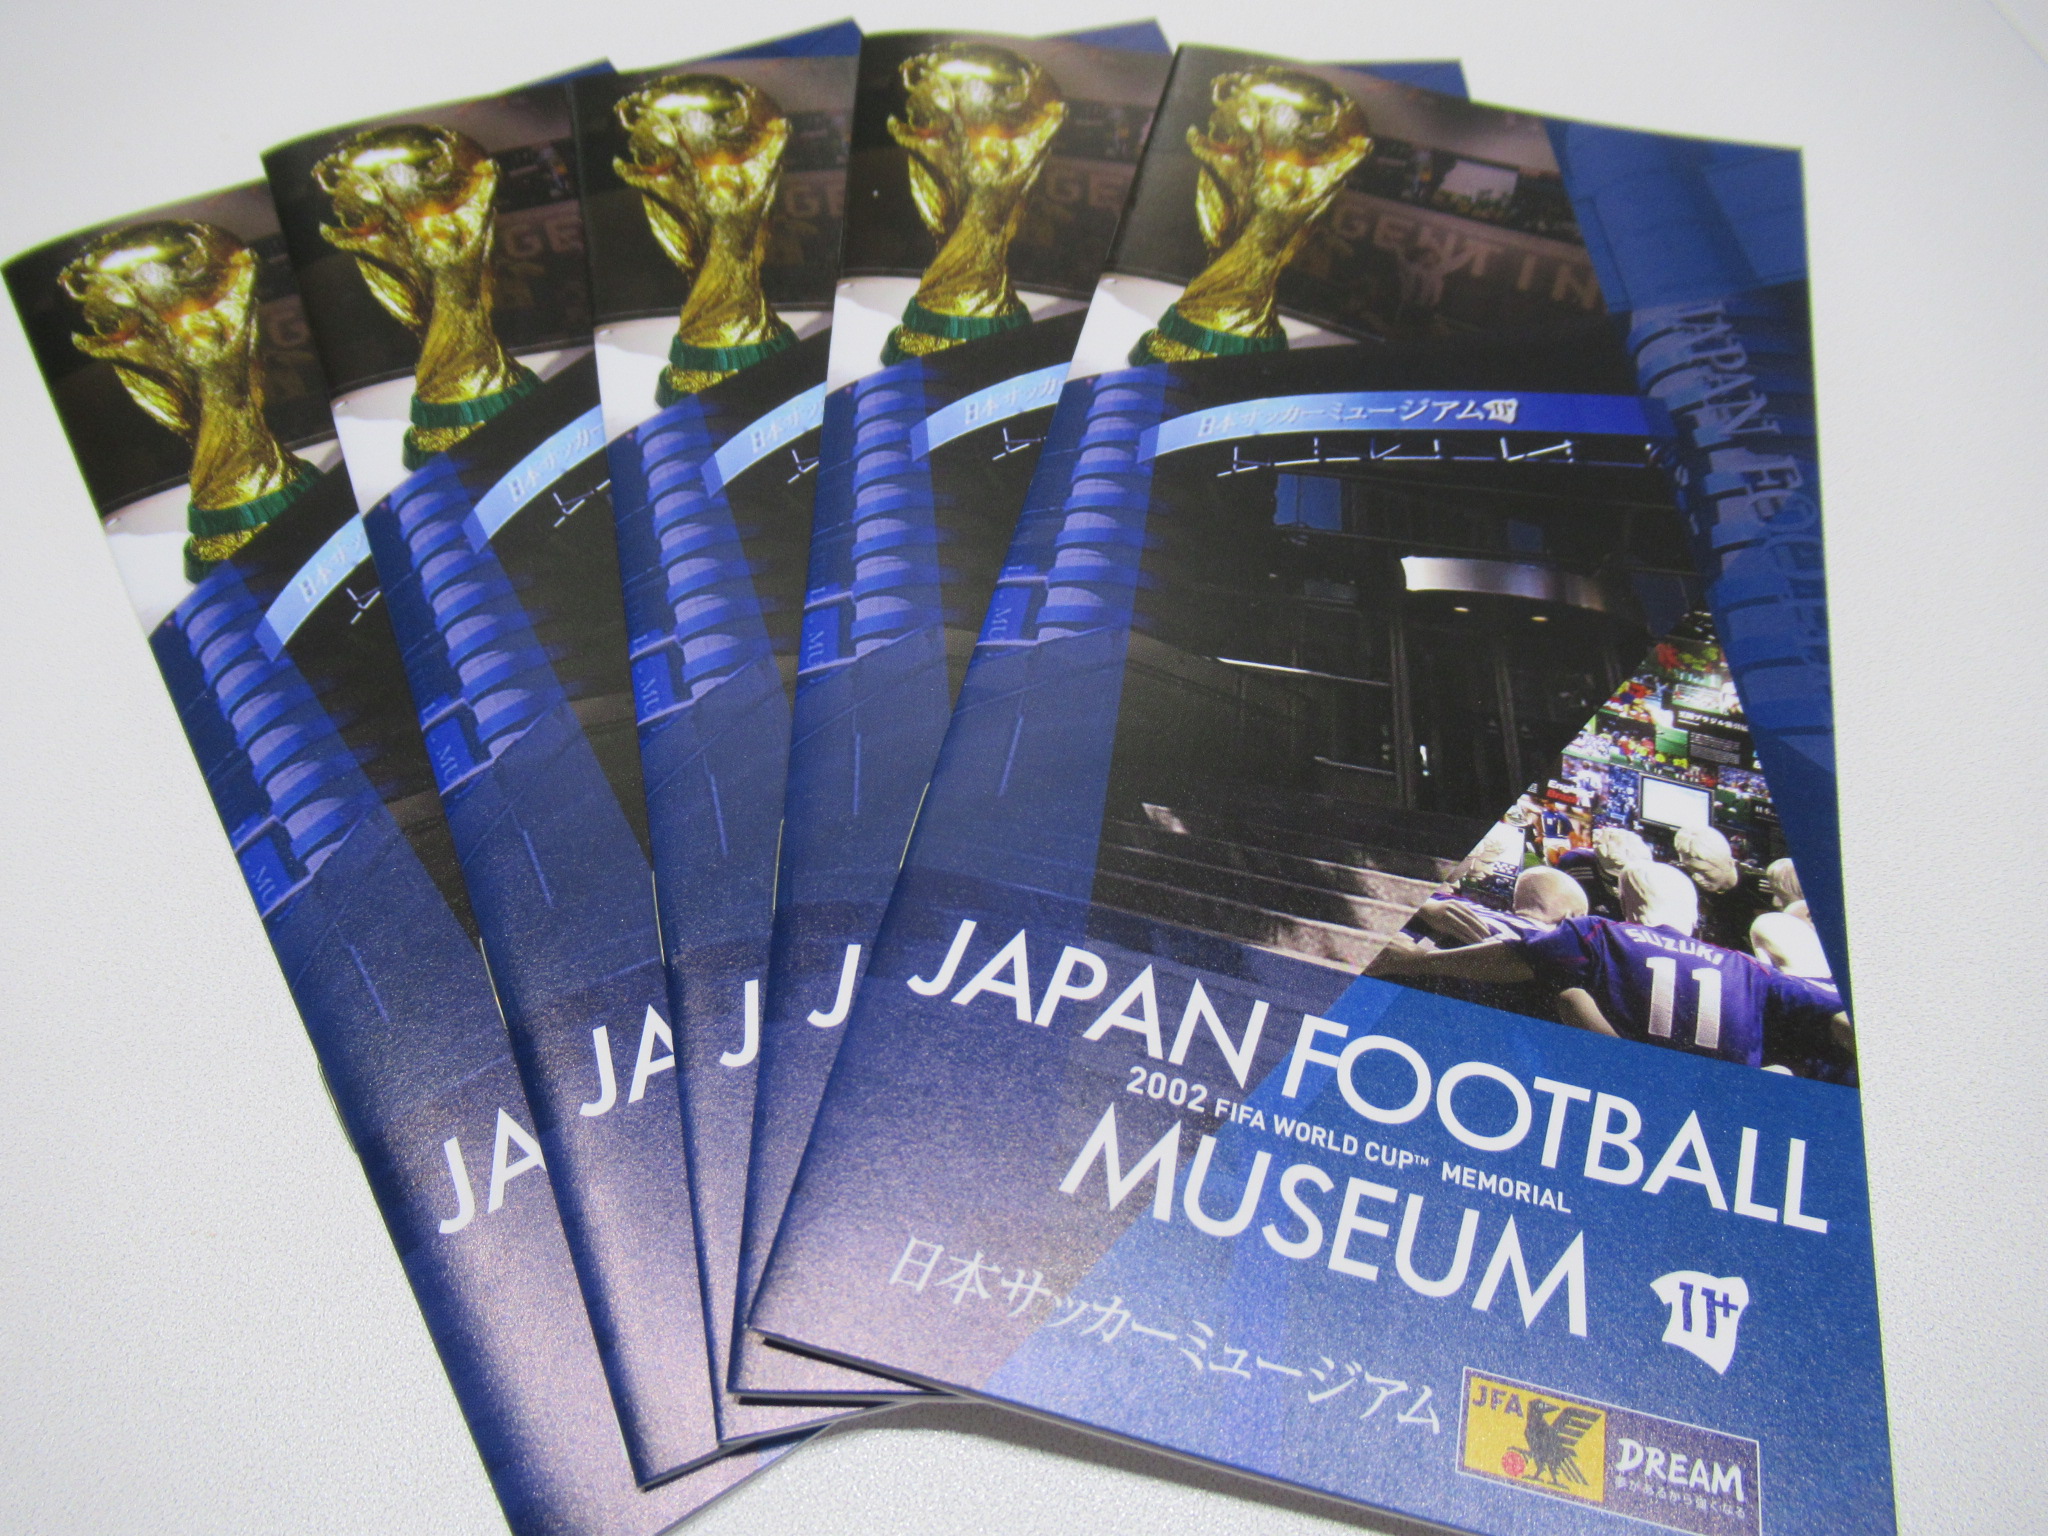 日本サッカーミュージアム Jfa Museum Twitter